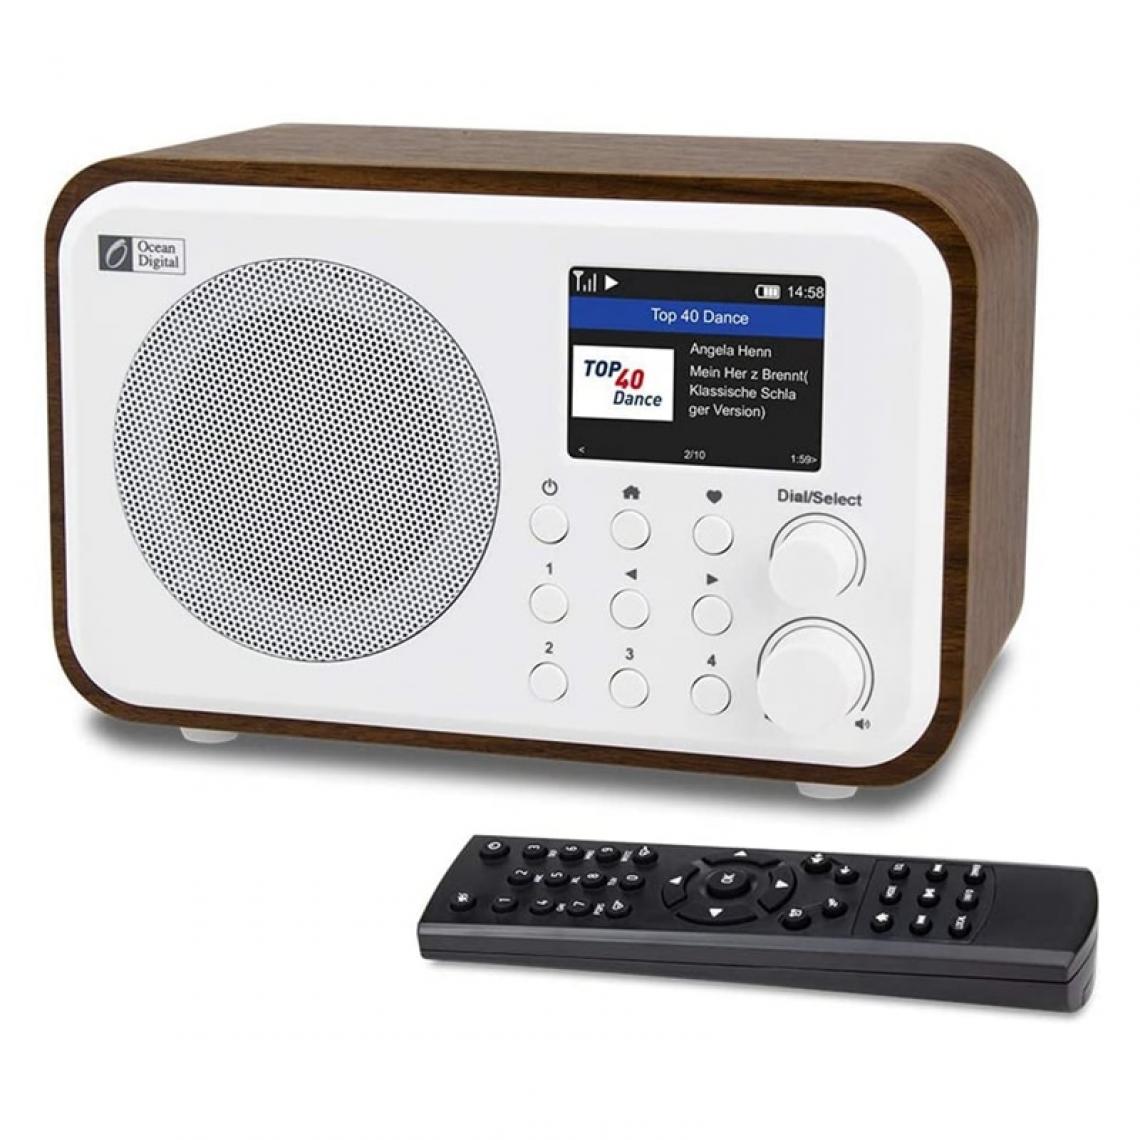 Universal - Récepteur radio Internet WiFi WR 336N Radio numérique portable avec batterie rechargeable Récepteur Bluetooth(blanche) - Radio